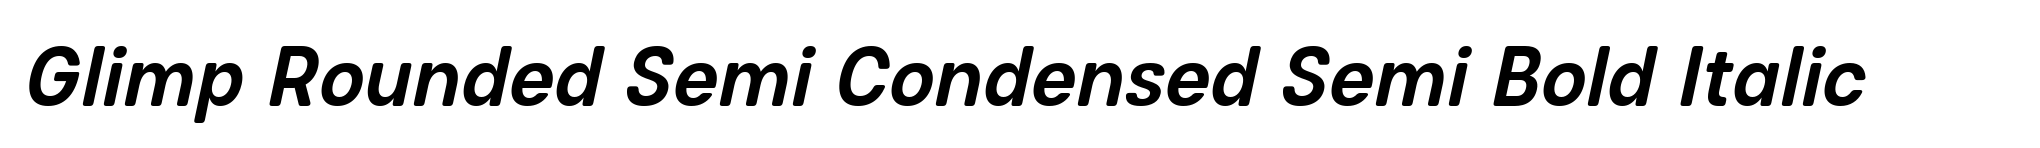 Glimp Rounded Semi Condensed Semi Bold Italic image